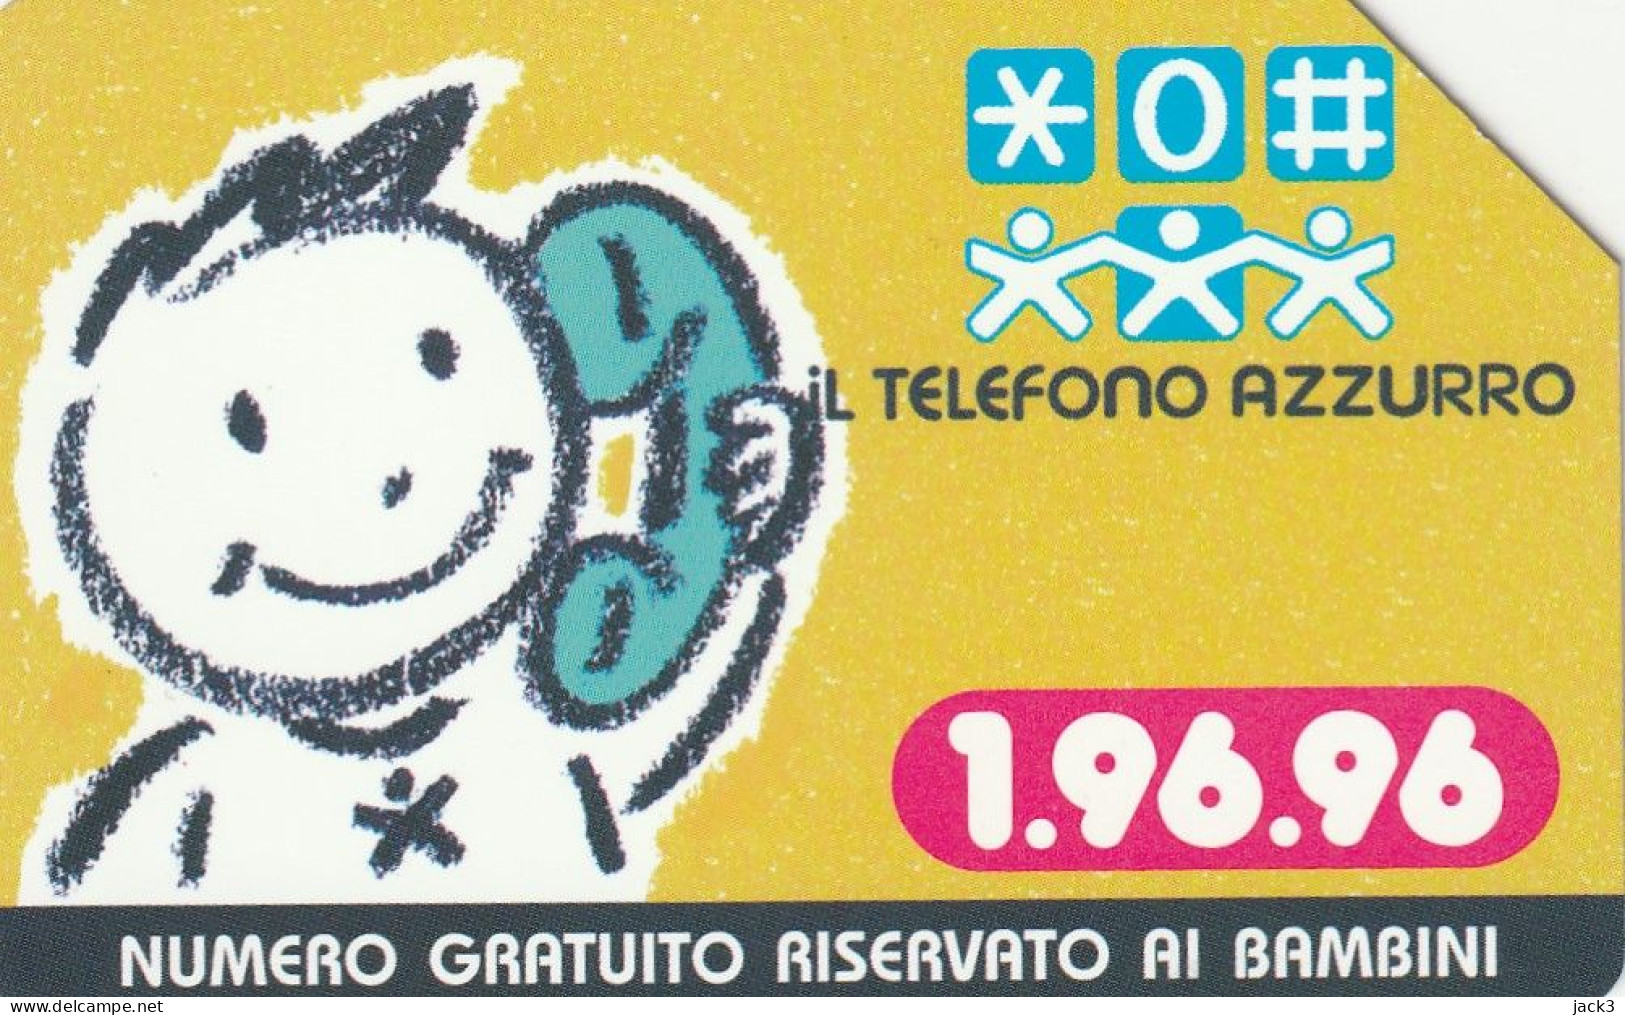 SCEDA TELEFONICA - TELEFONO AZZURRO (2 SCANS) - Pubbliche Tematiche